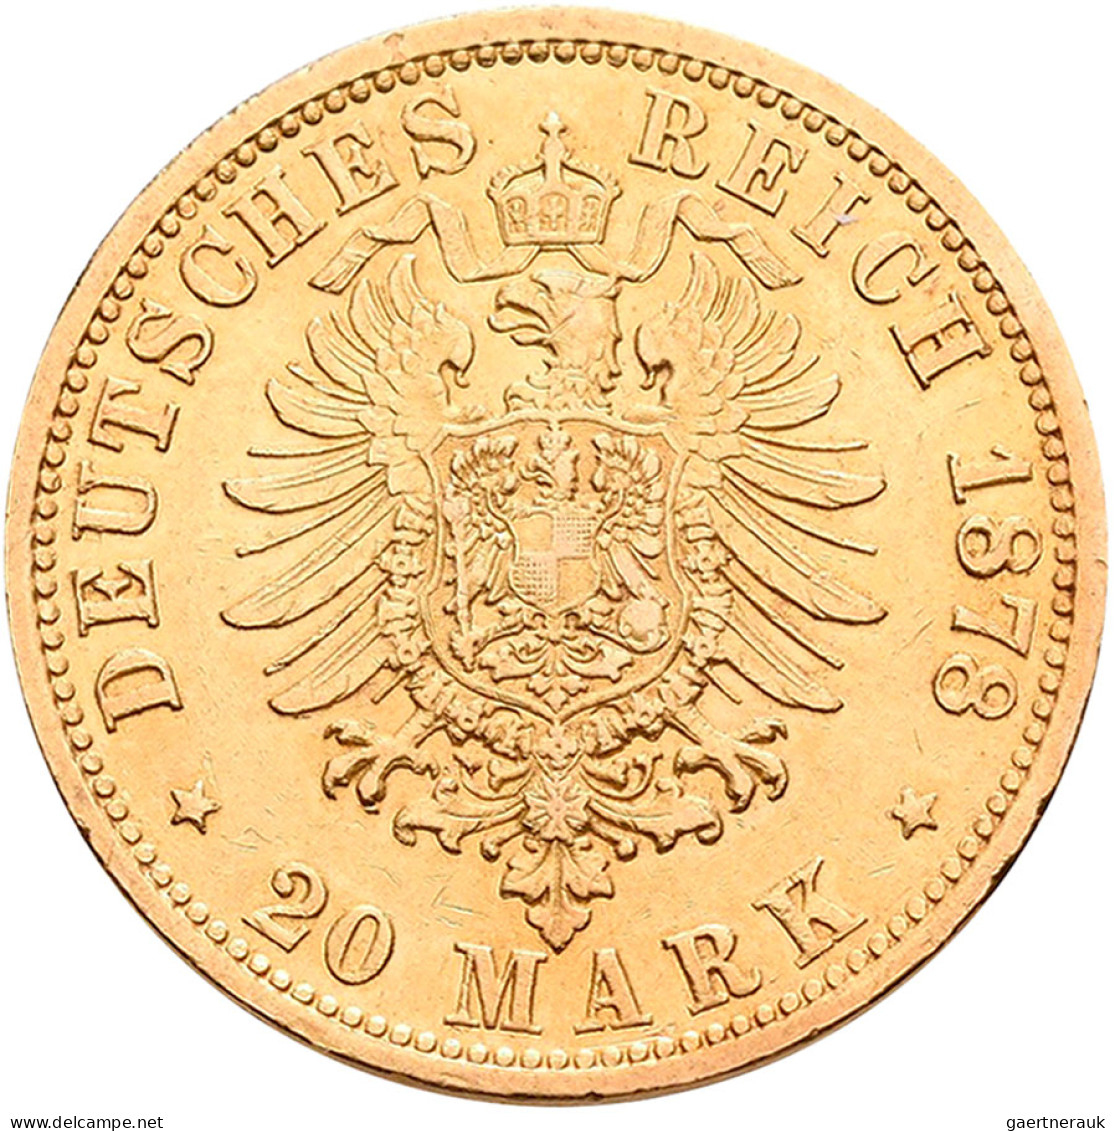 Hamburg - Anlagegold: Freie Und Hansestadt: 20 Mark 1878, Jaeger 210. 7,965 G, 9 - 5, 10 & 20 Mark Gold